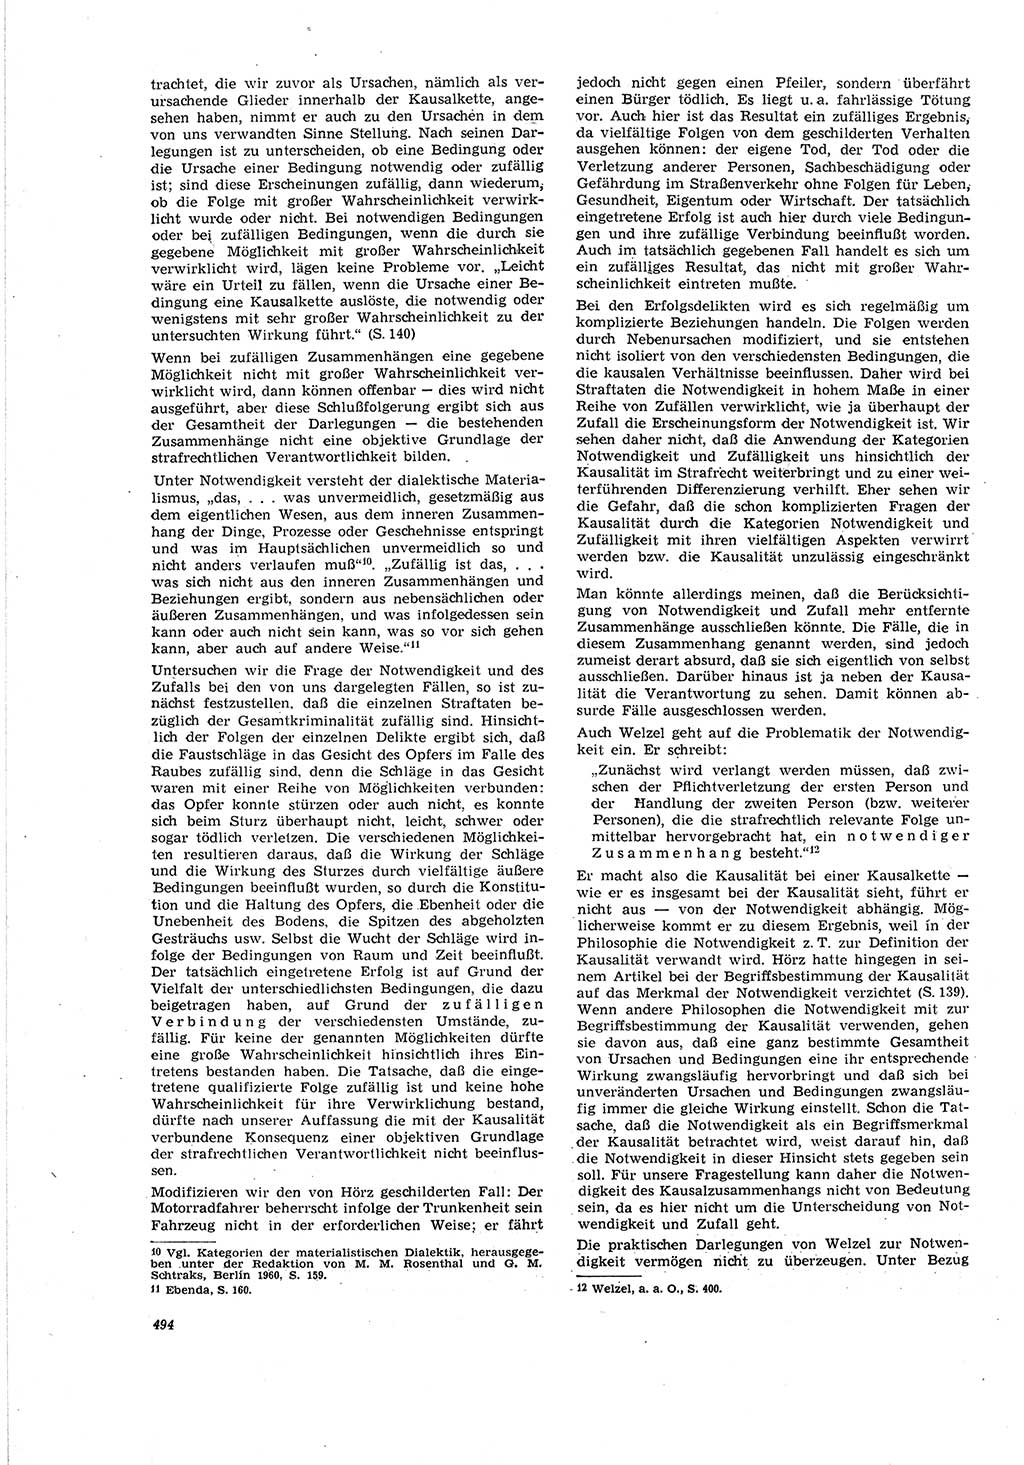 Neue Justiz (NJ), Zeitschrift für Recht und Rechtswissenschaft [Deutsche Demokratische Republik (DDR)], 20. Jahrgang 1966, Seite 494 (NJ DDR 1966, S. 494)